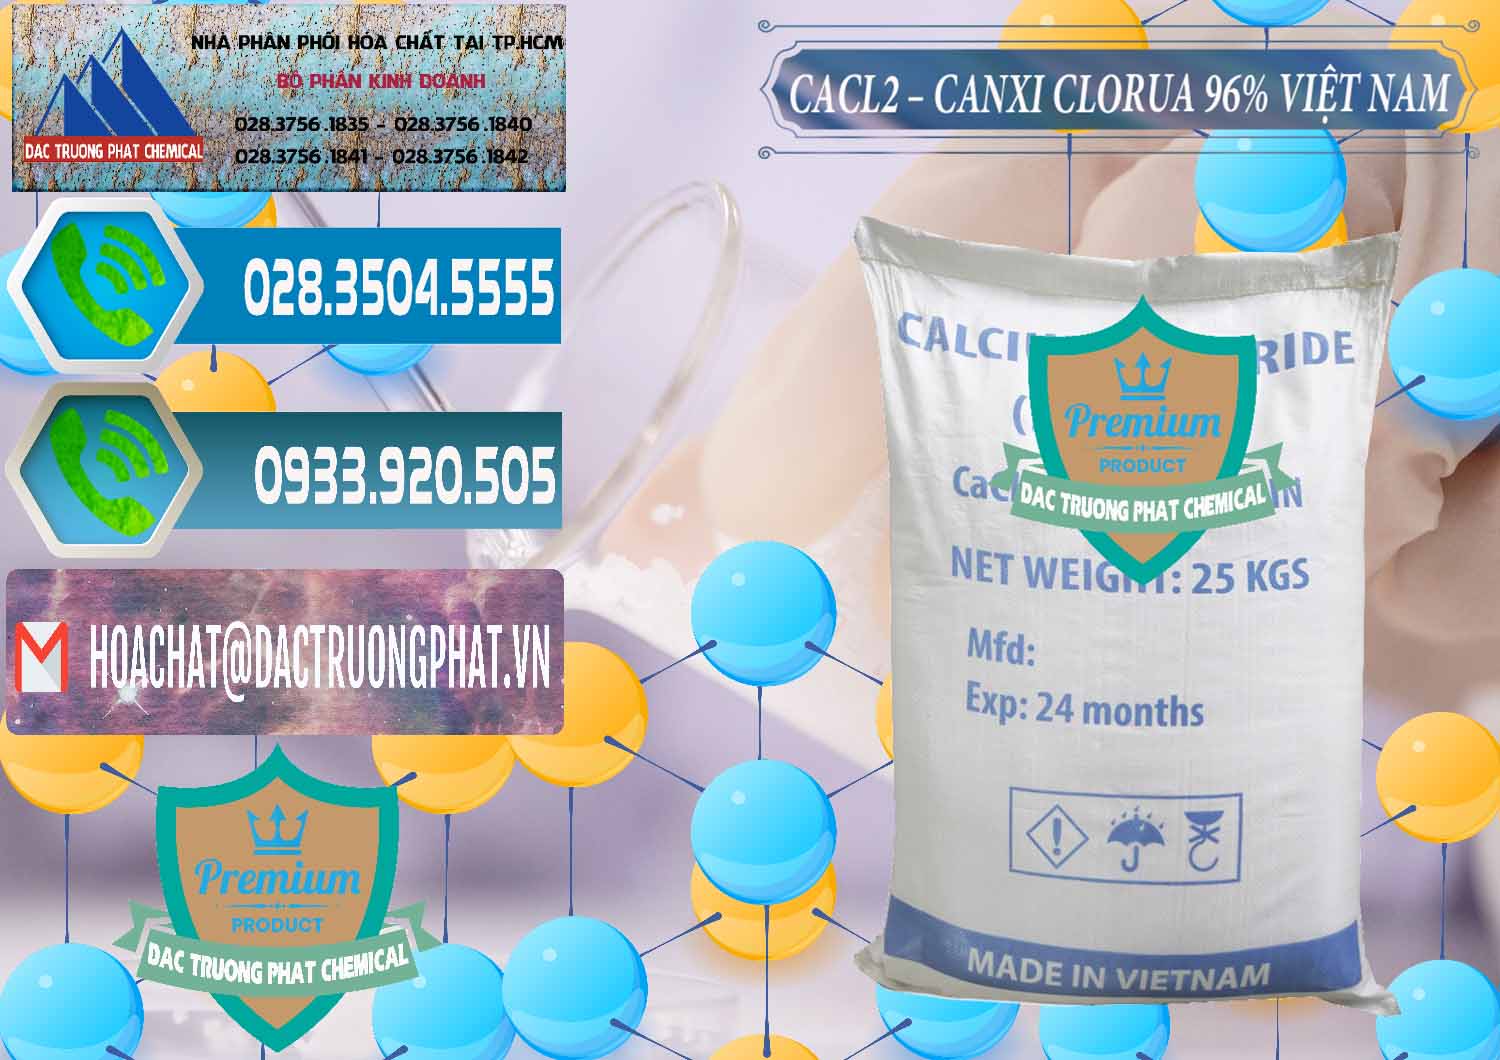 Nơi cung cấp ( kinh doanh ) CaCl2 – Canxi Clorua 96% Việt Nam - 0236 - Cung cấp ( kinh doanh ) hóa chất tại TP.HCM - congtyhoachat.net